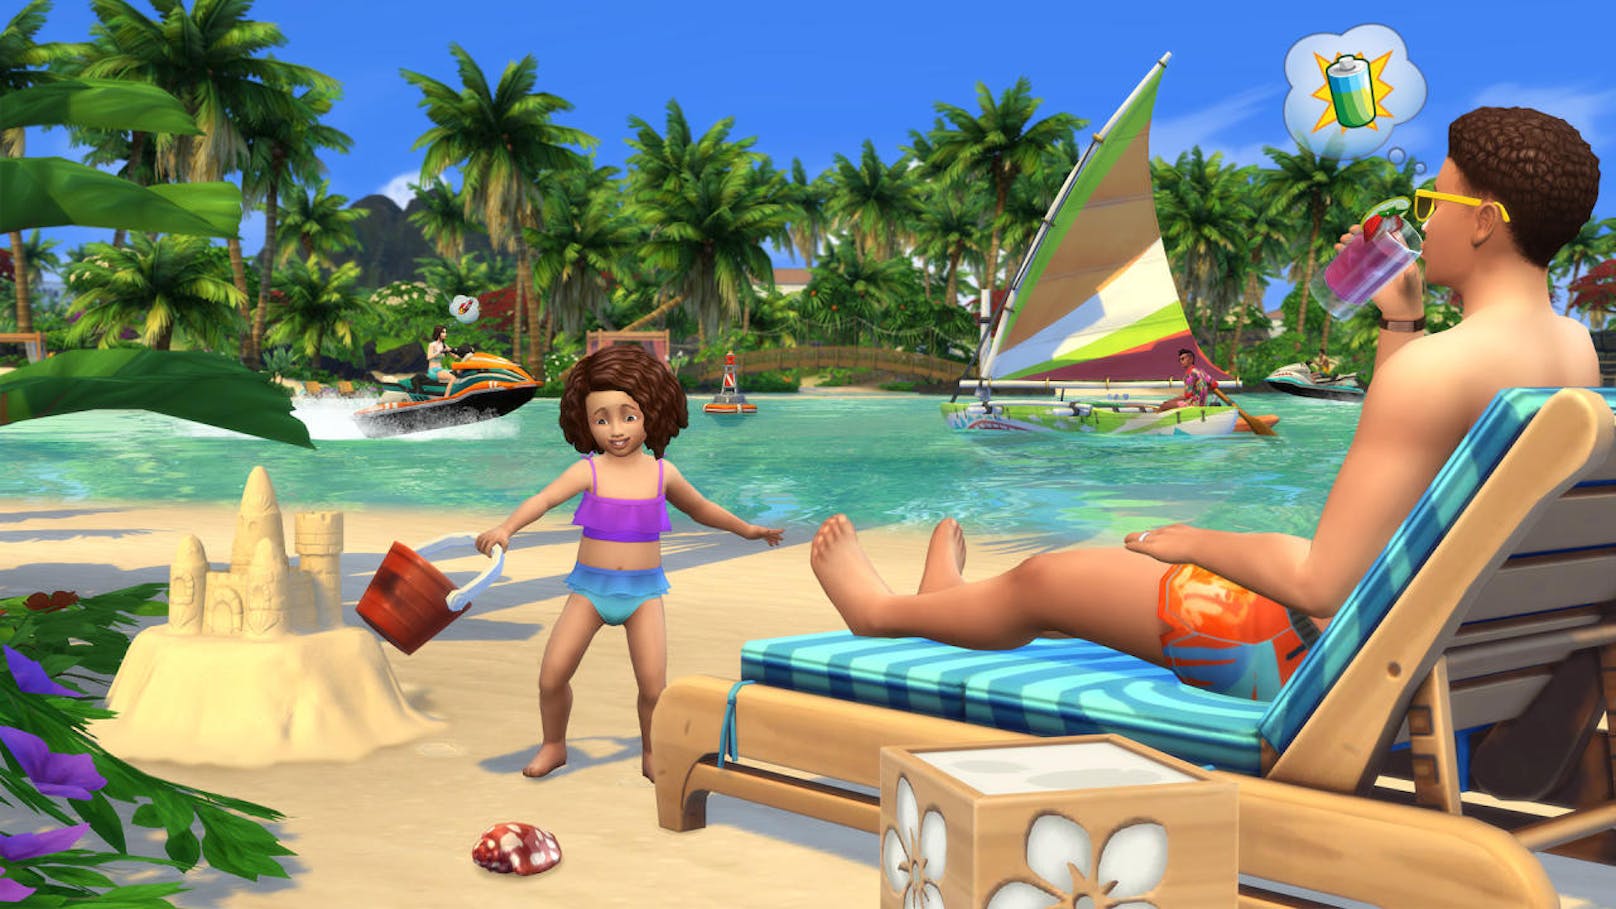 Electronic Arts und Maxis veröffentlichen das Die Sims 4 Inselleben-Erweiterungspack für PC und Mac. Die Sims tanken Sonne und genießen das Leben auf einer Insel - voller einzigartiger Kultur, Wasser-Aktivitäten und vielleicht mit dem einen oder anderen Sonnenbrand. Das Erweiterungspack heißt Sims auf der Insel Sulani willkommen, wo sich heiße Tage und entspannte Nächte abwechseln. Zum ersten Mal genießen die Sims Aktivitäten, die alles beinhalten, was die Insel und das glitzernde Wasser zu bieten haben: Sandburgen am Strand bauen, auf dem Aqua-Zischer an verspielten Delfinen vorbei düsen und schwimmend oder an Bord verschiedener Wasserfahrzeuge das Meer erkunden. <a href="https://www.youtube.com/watch?v=AOGT8cCs2RM&feature=youtu.be">Der offizielle Gameplay-Trailer ist hier zu sehen.</a>